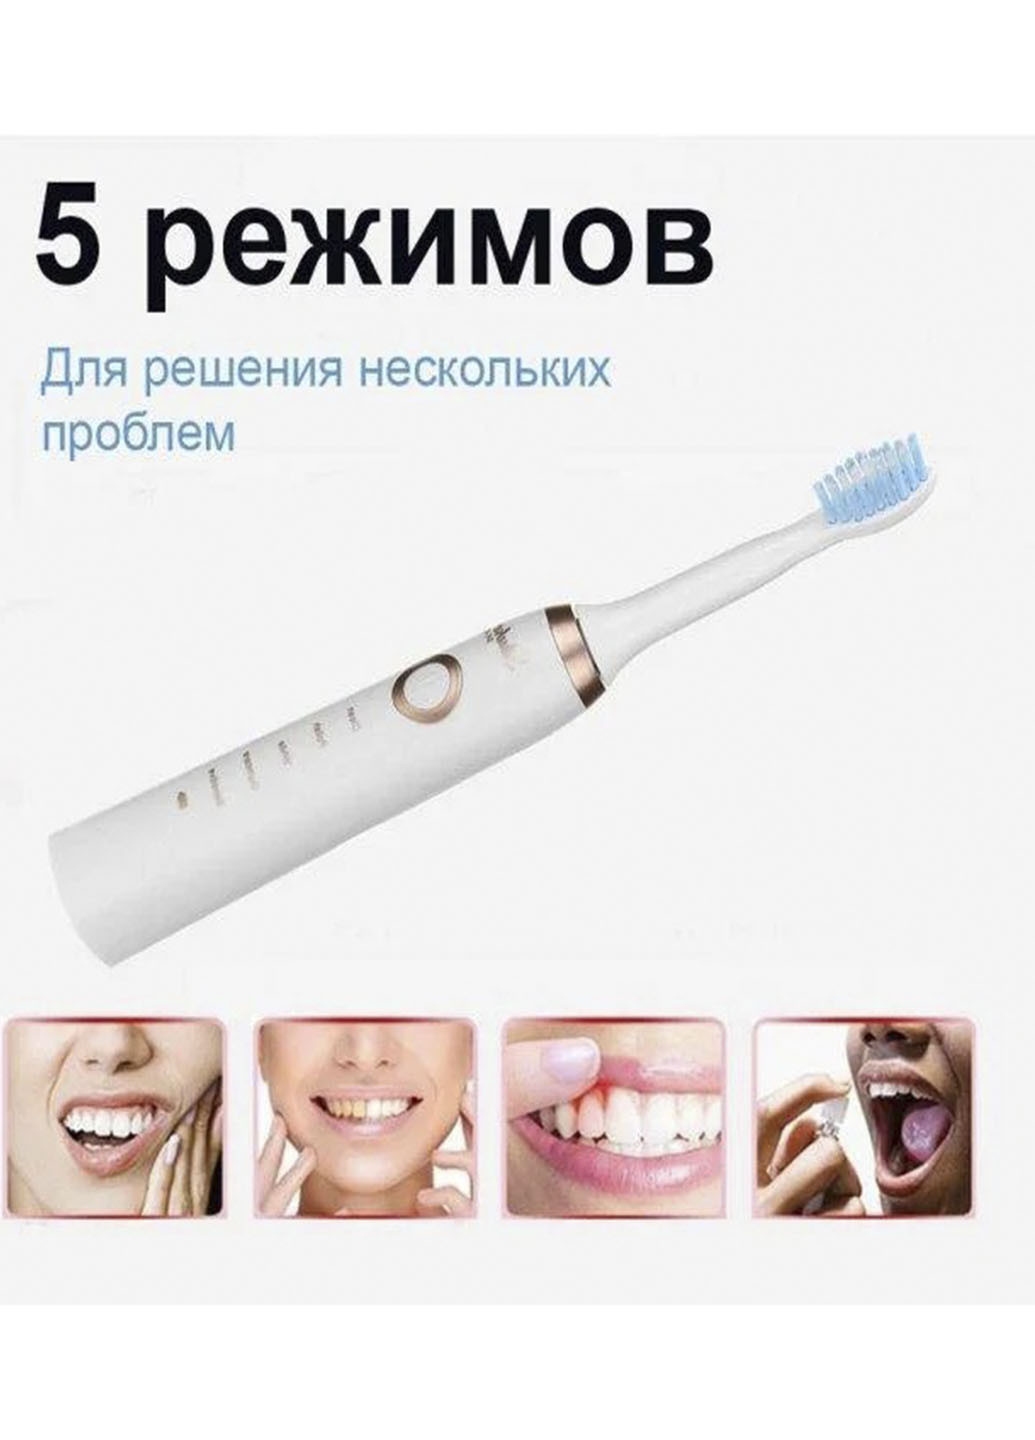 Аккумуляторная массажная зубная щетка Shuke с 5 режимами работы в комплекте 4 насадки Good Idea белая